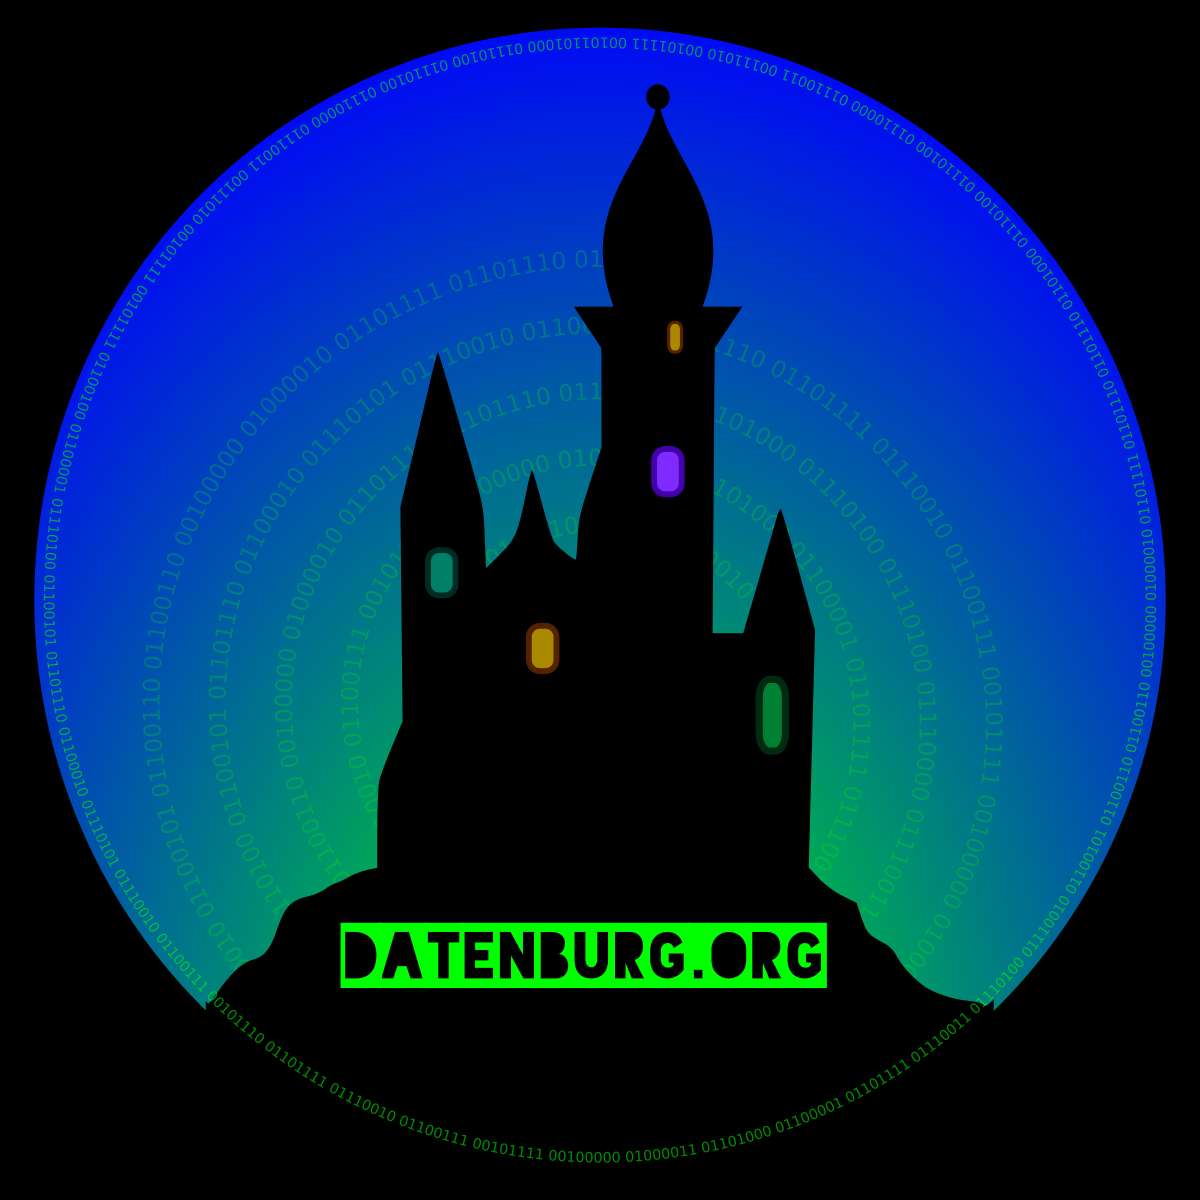 Datenburg